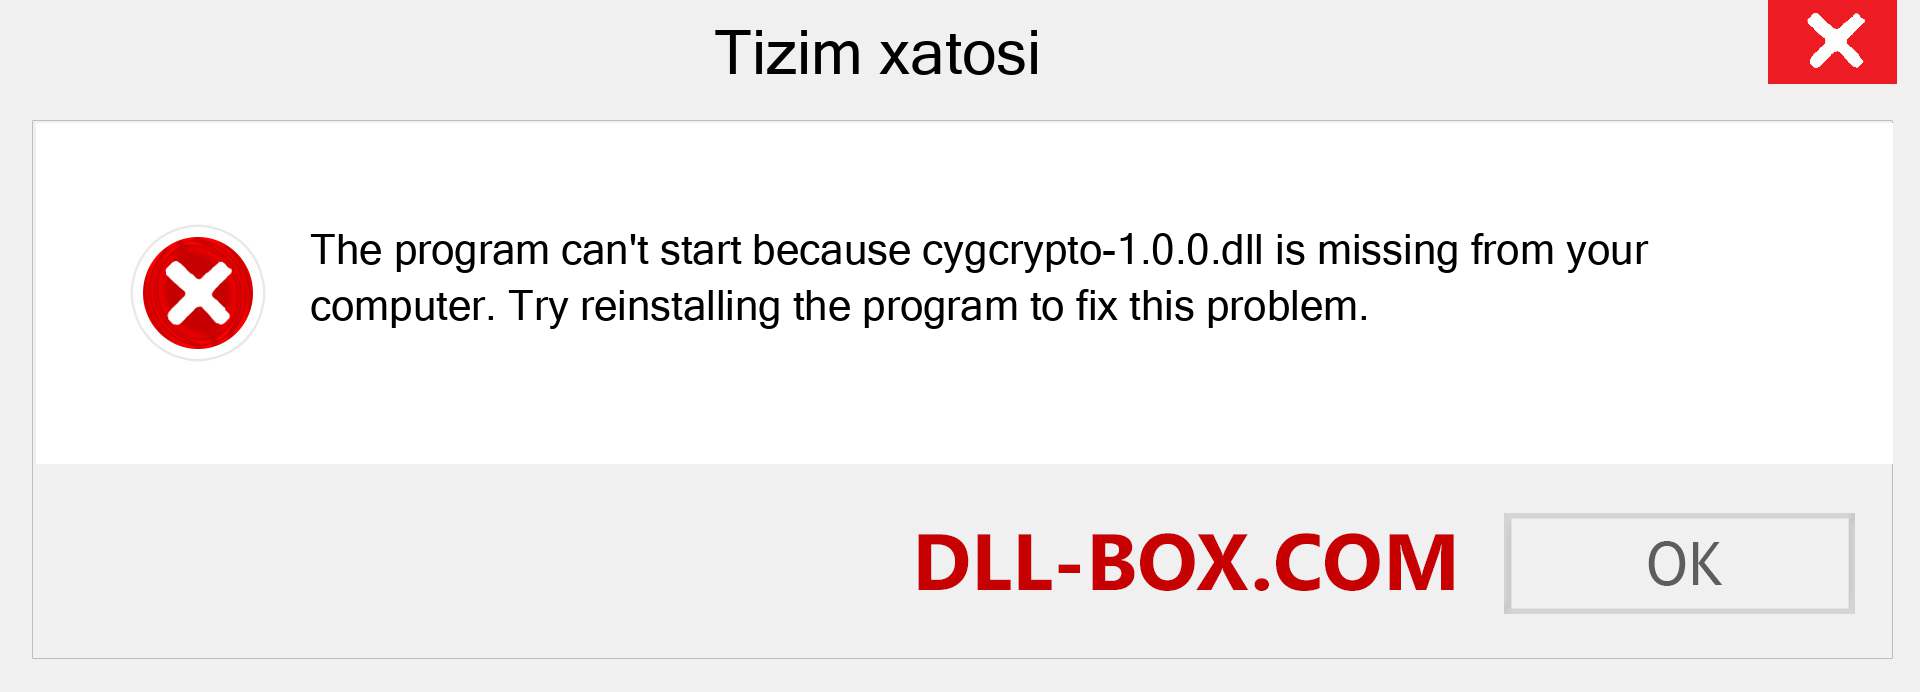 cygcrypto-1.0.0.dll fayli yo'qolganmi?. Windows 7, 8, 10 uchun yuklab olish - Windowsda cygcrypto-1.0.0 dll etishmayotgan xatoni tuzating, rasmlar, rasmlar